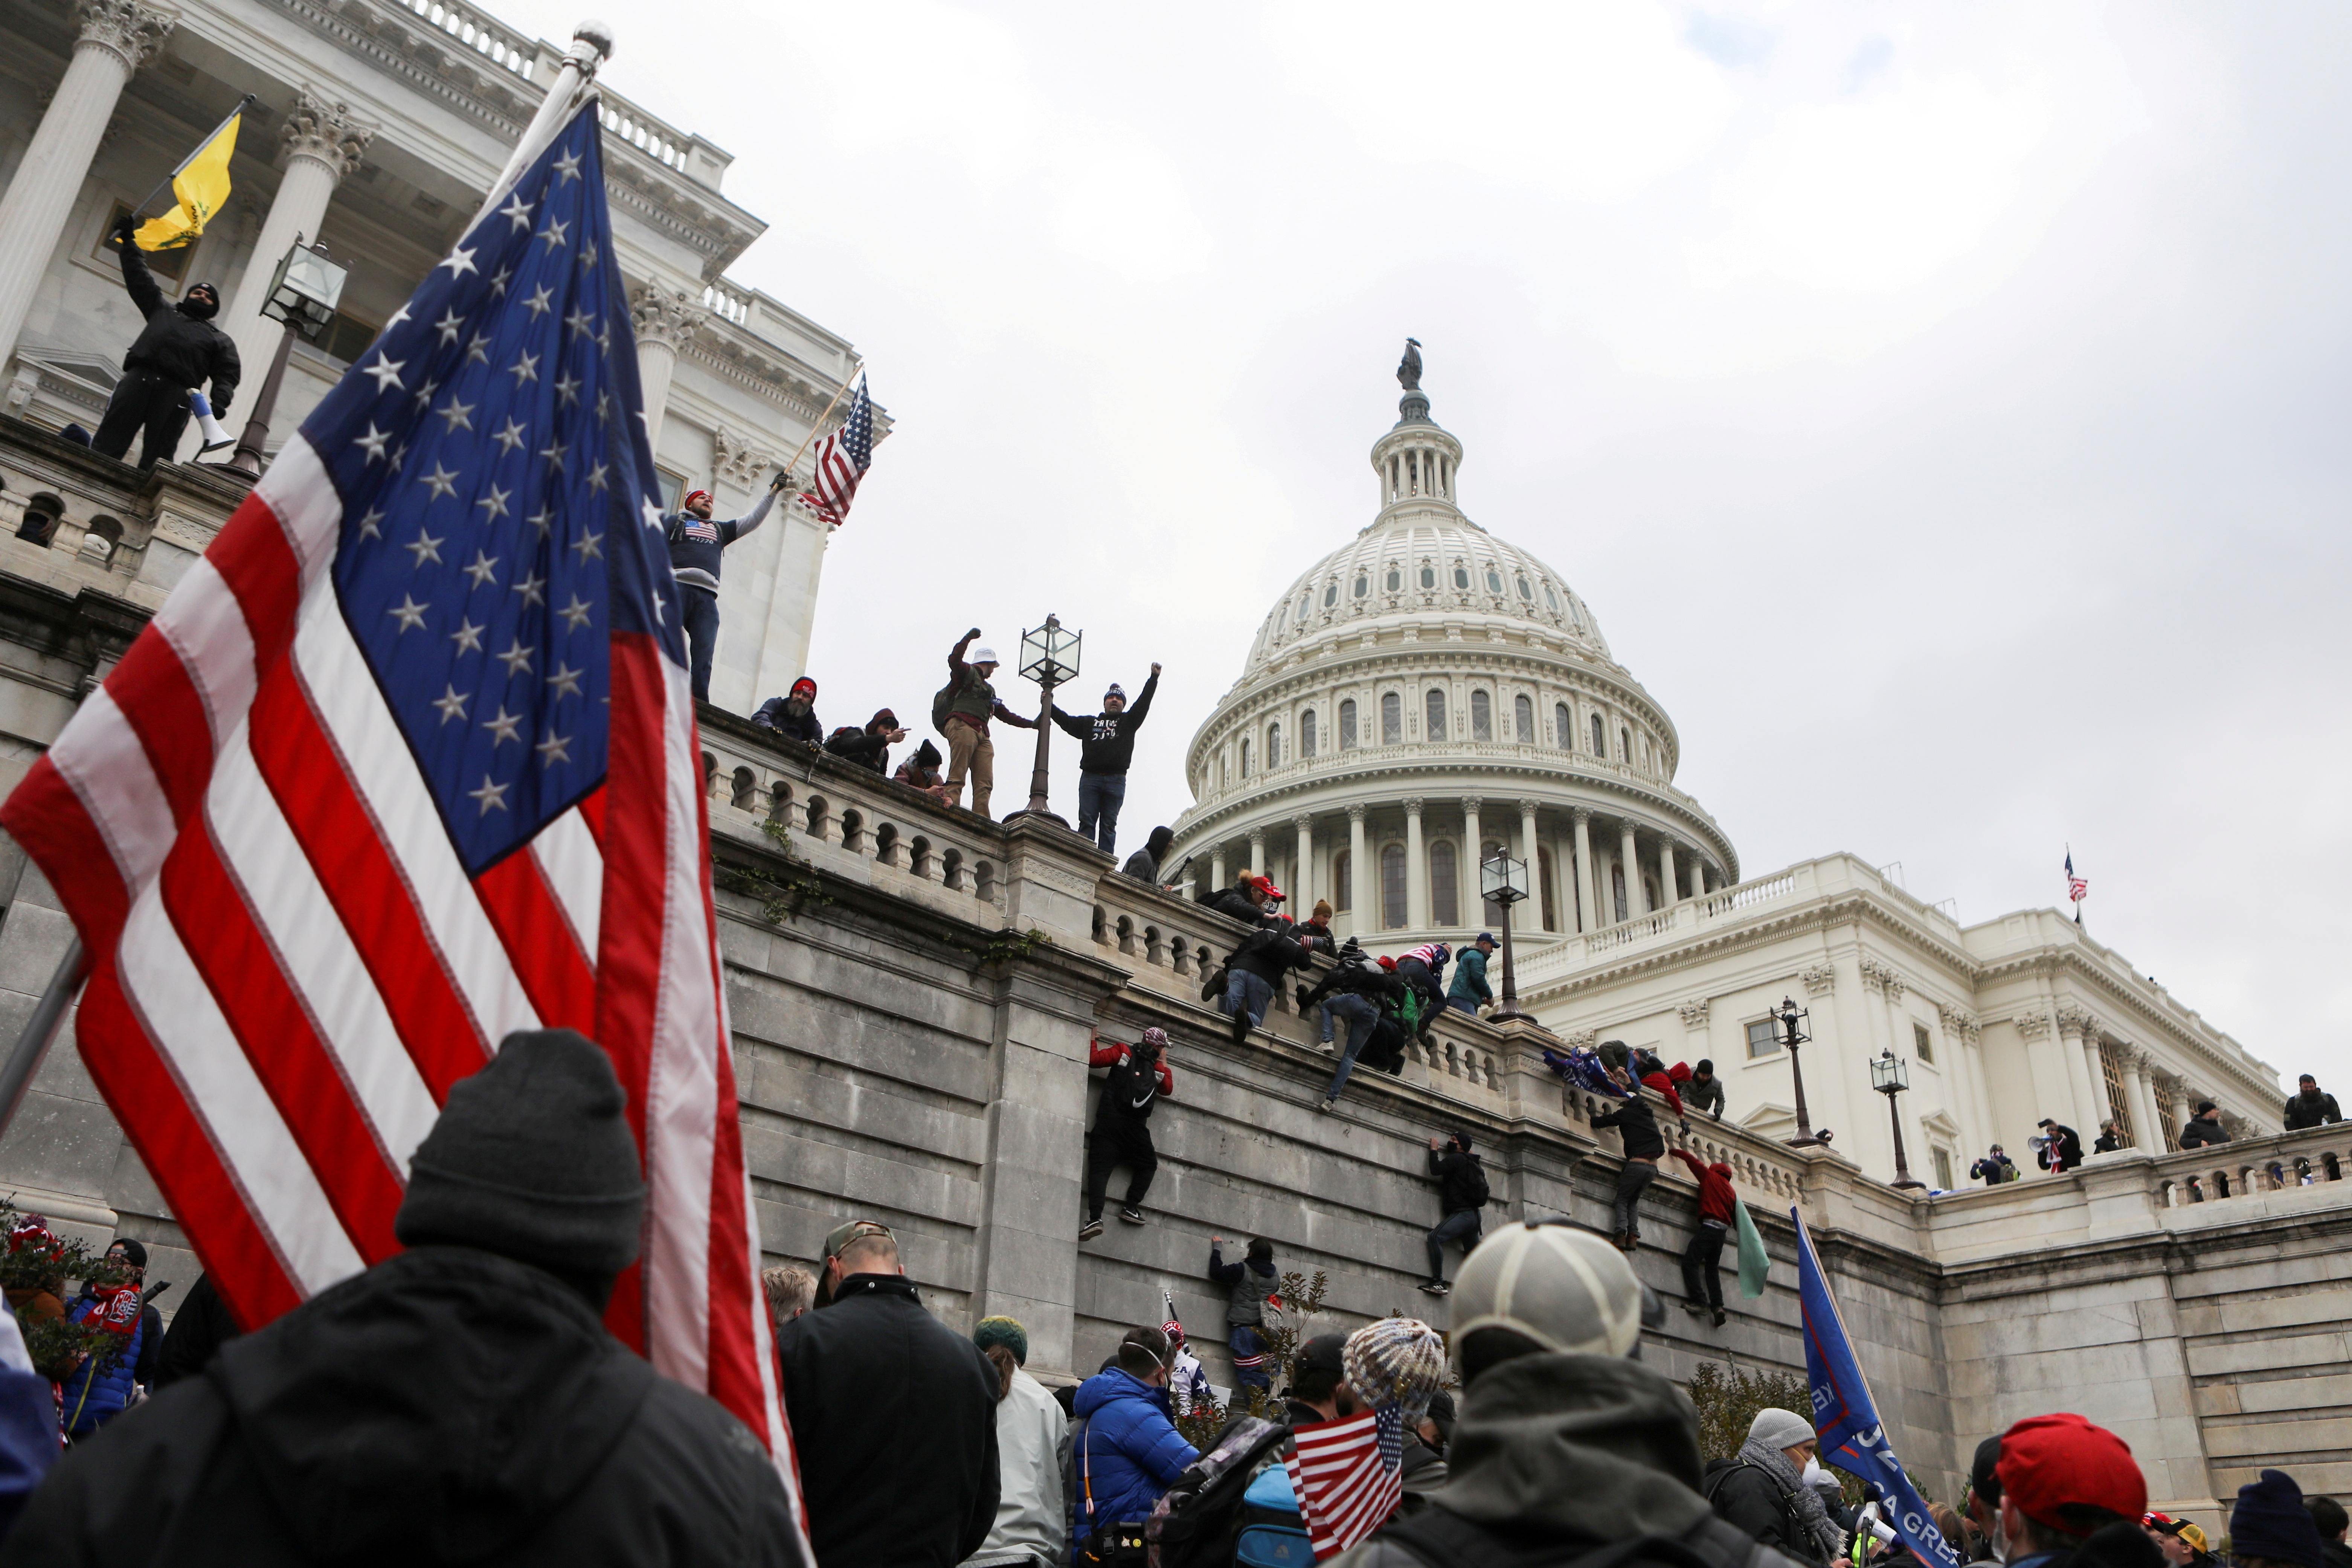 Imágenes de los partidarios de Donald Trump durante su irrupción en el Capitolio. Foto: REUTERS/Jim Urquhart